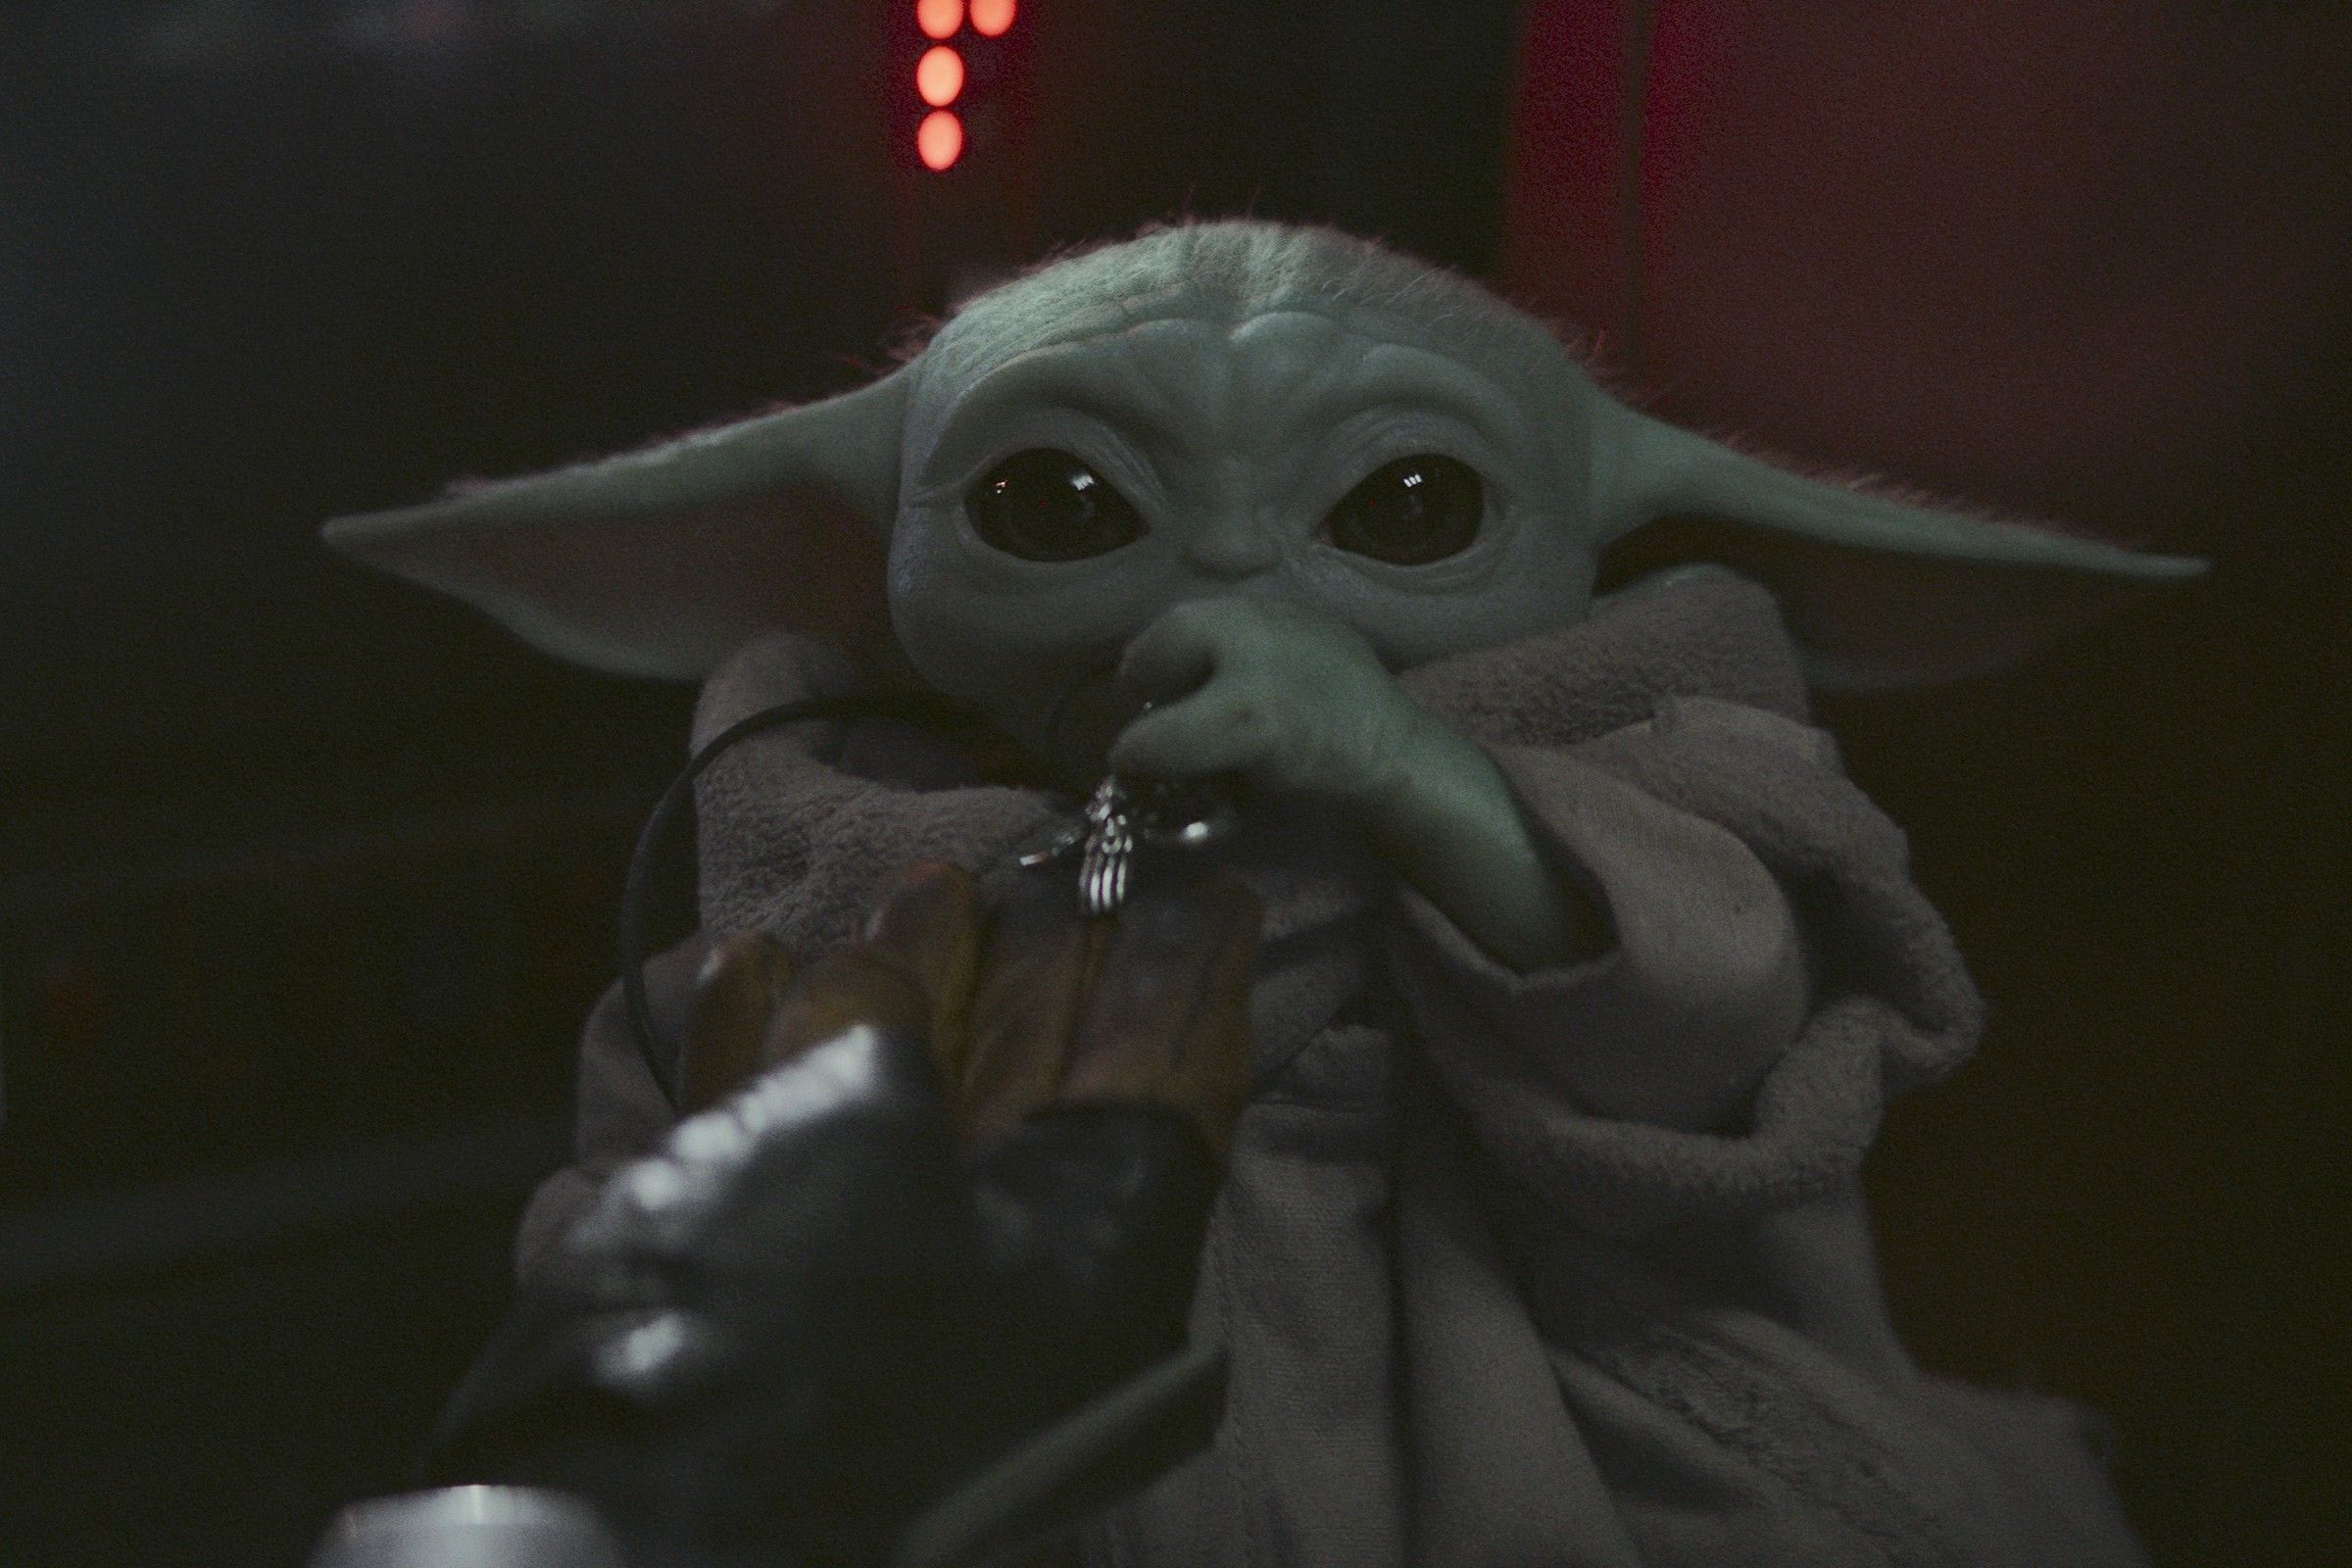 Baby Yoda has many 'The Mandalorian' cast mates. We ranked them